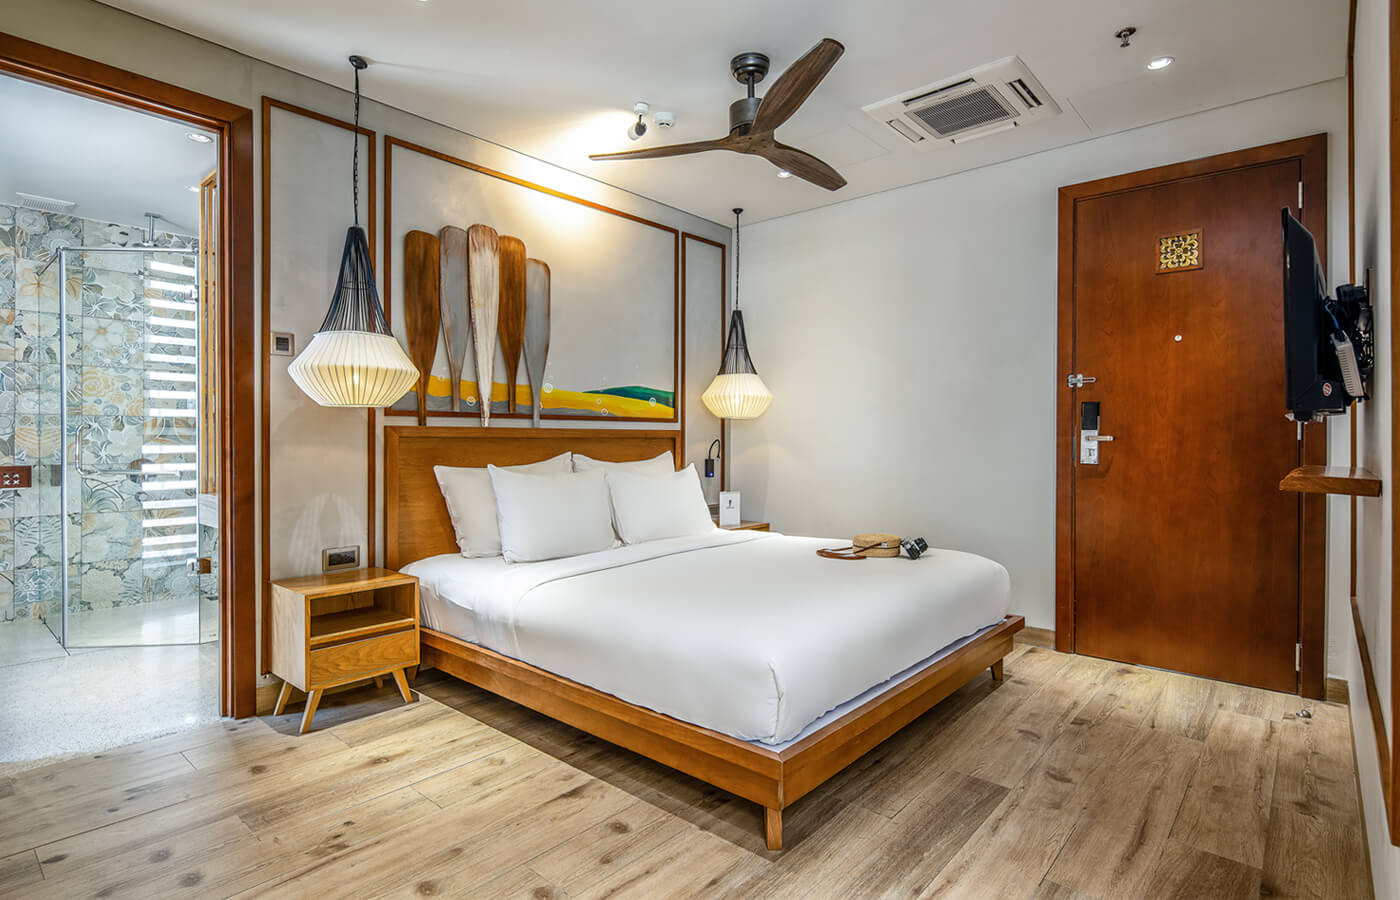 Phòng nghỉ thiết kế độc đáo với chủ đề biển cả của Đà Nẵng